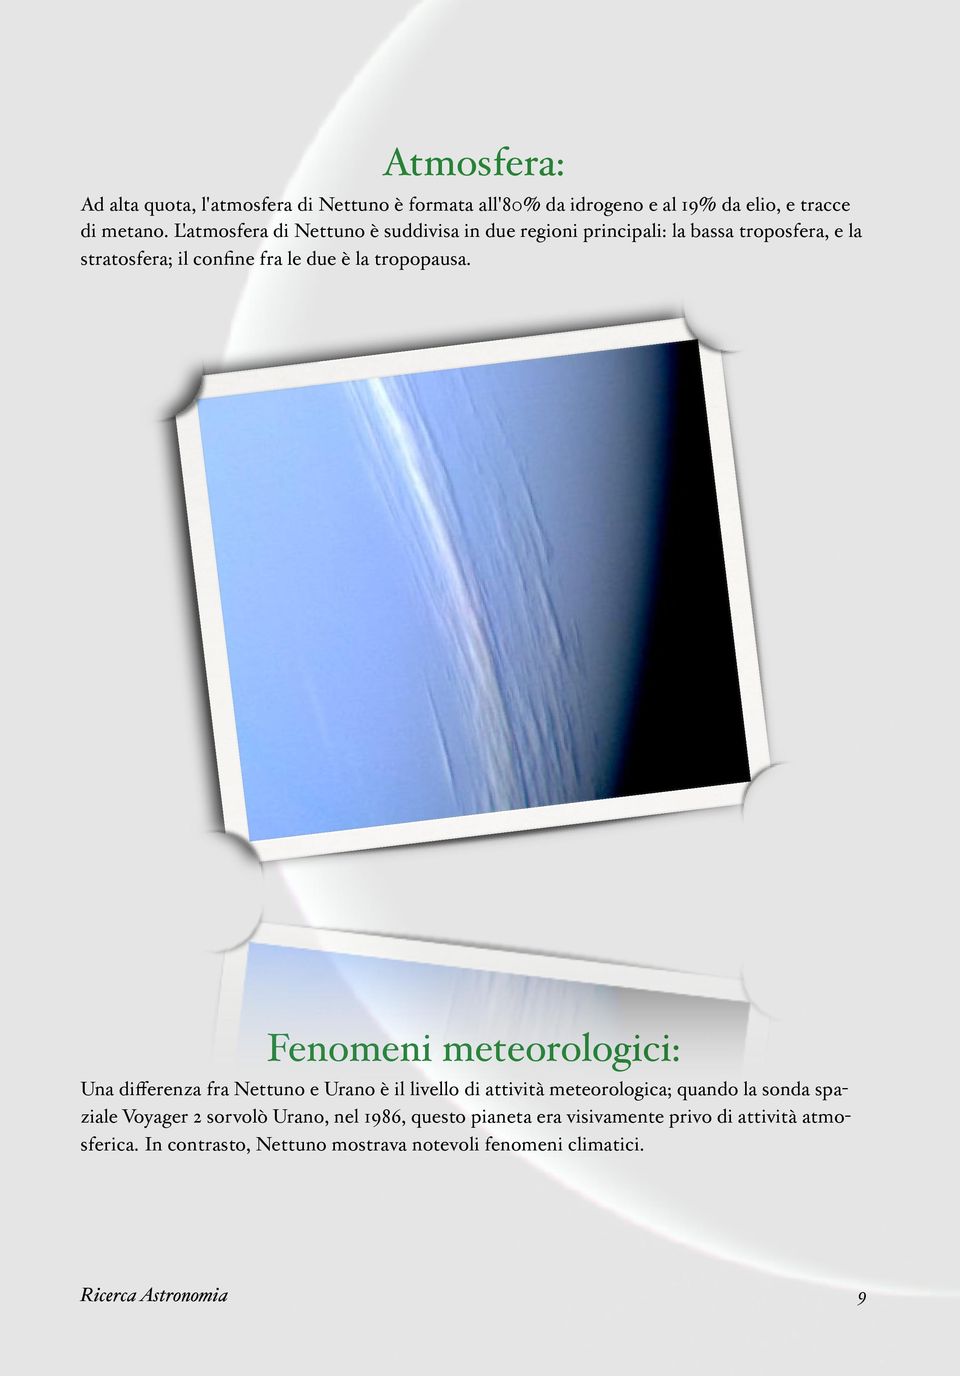 Fenomeni meteorologici: Una differenza fra Nettuno e Urano è il livello di attività meteorologica; quando la sonda spaziale Voyager 2